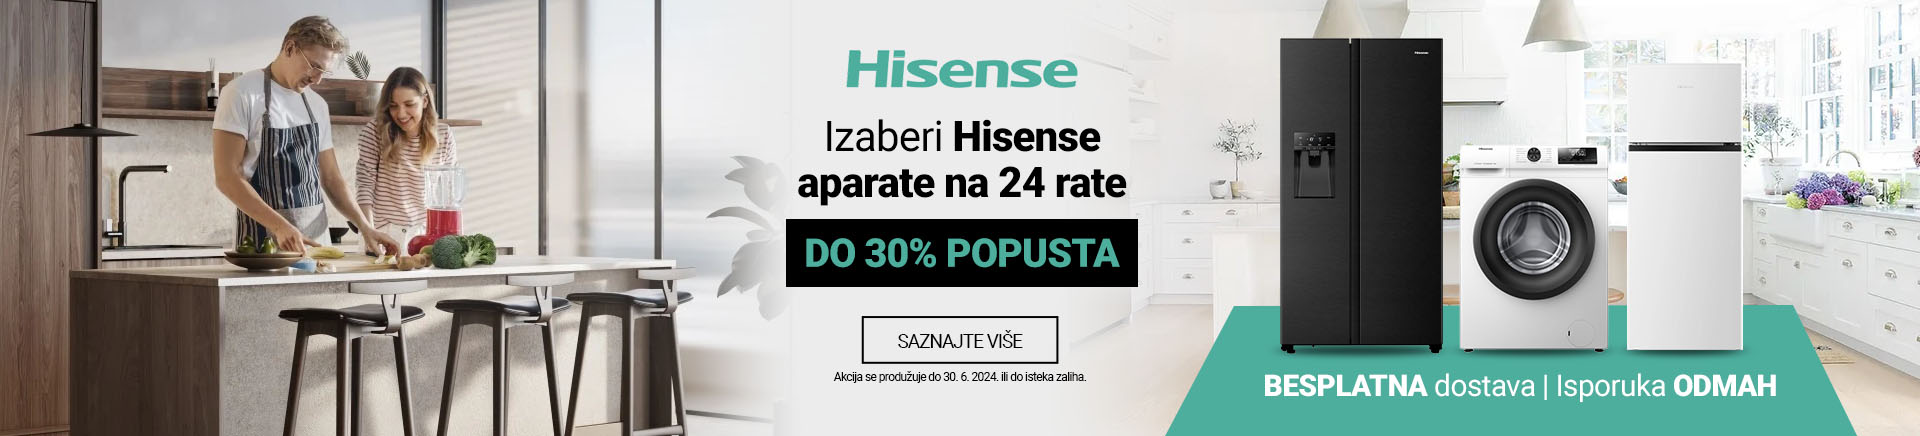 HR~Hisense Aparati na 24 rate 30 posto MOBILE za APP 760x872.jpg